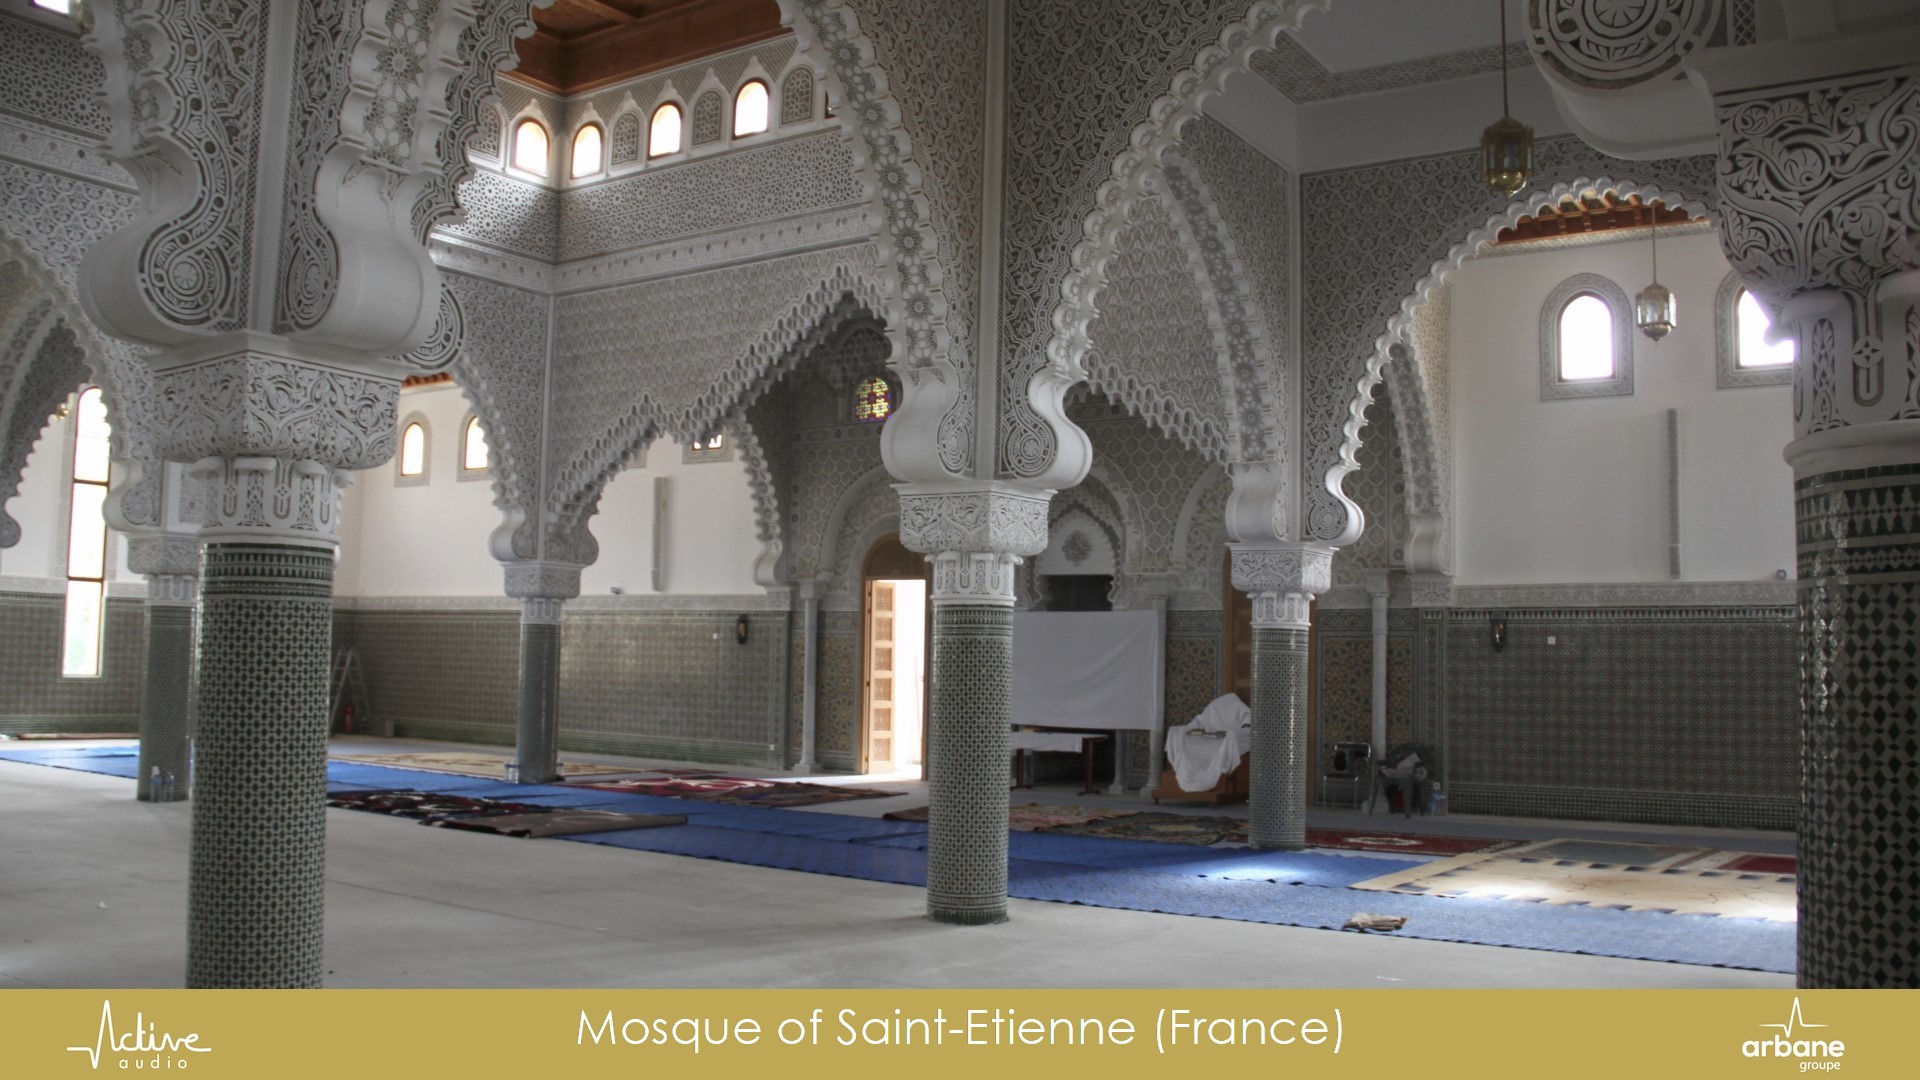 Mosquée de Saint-Etienne, France